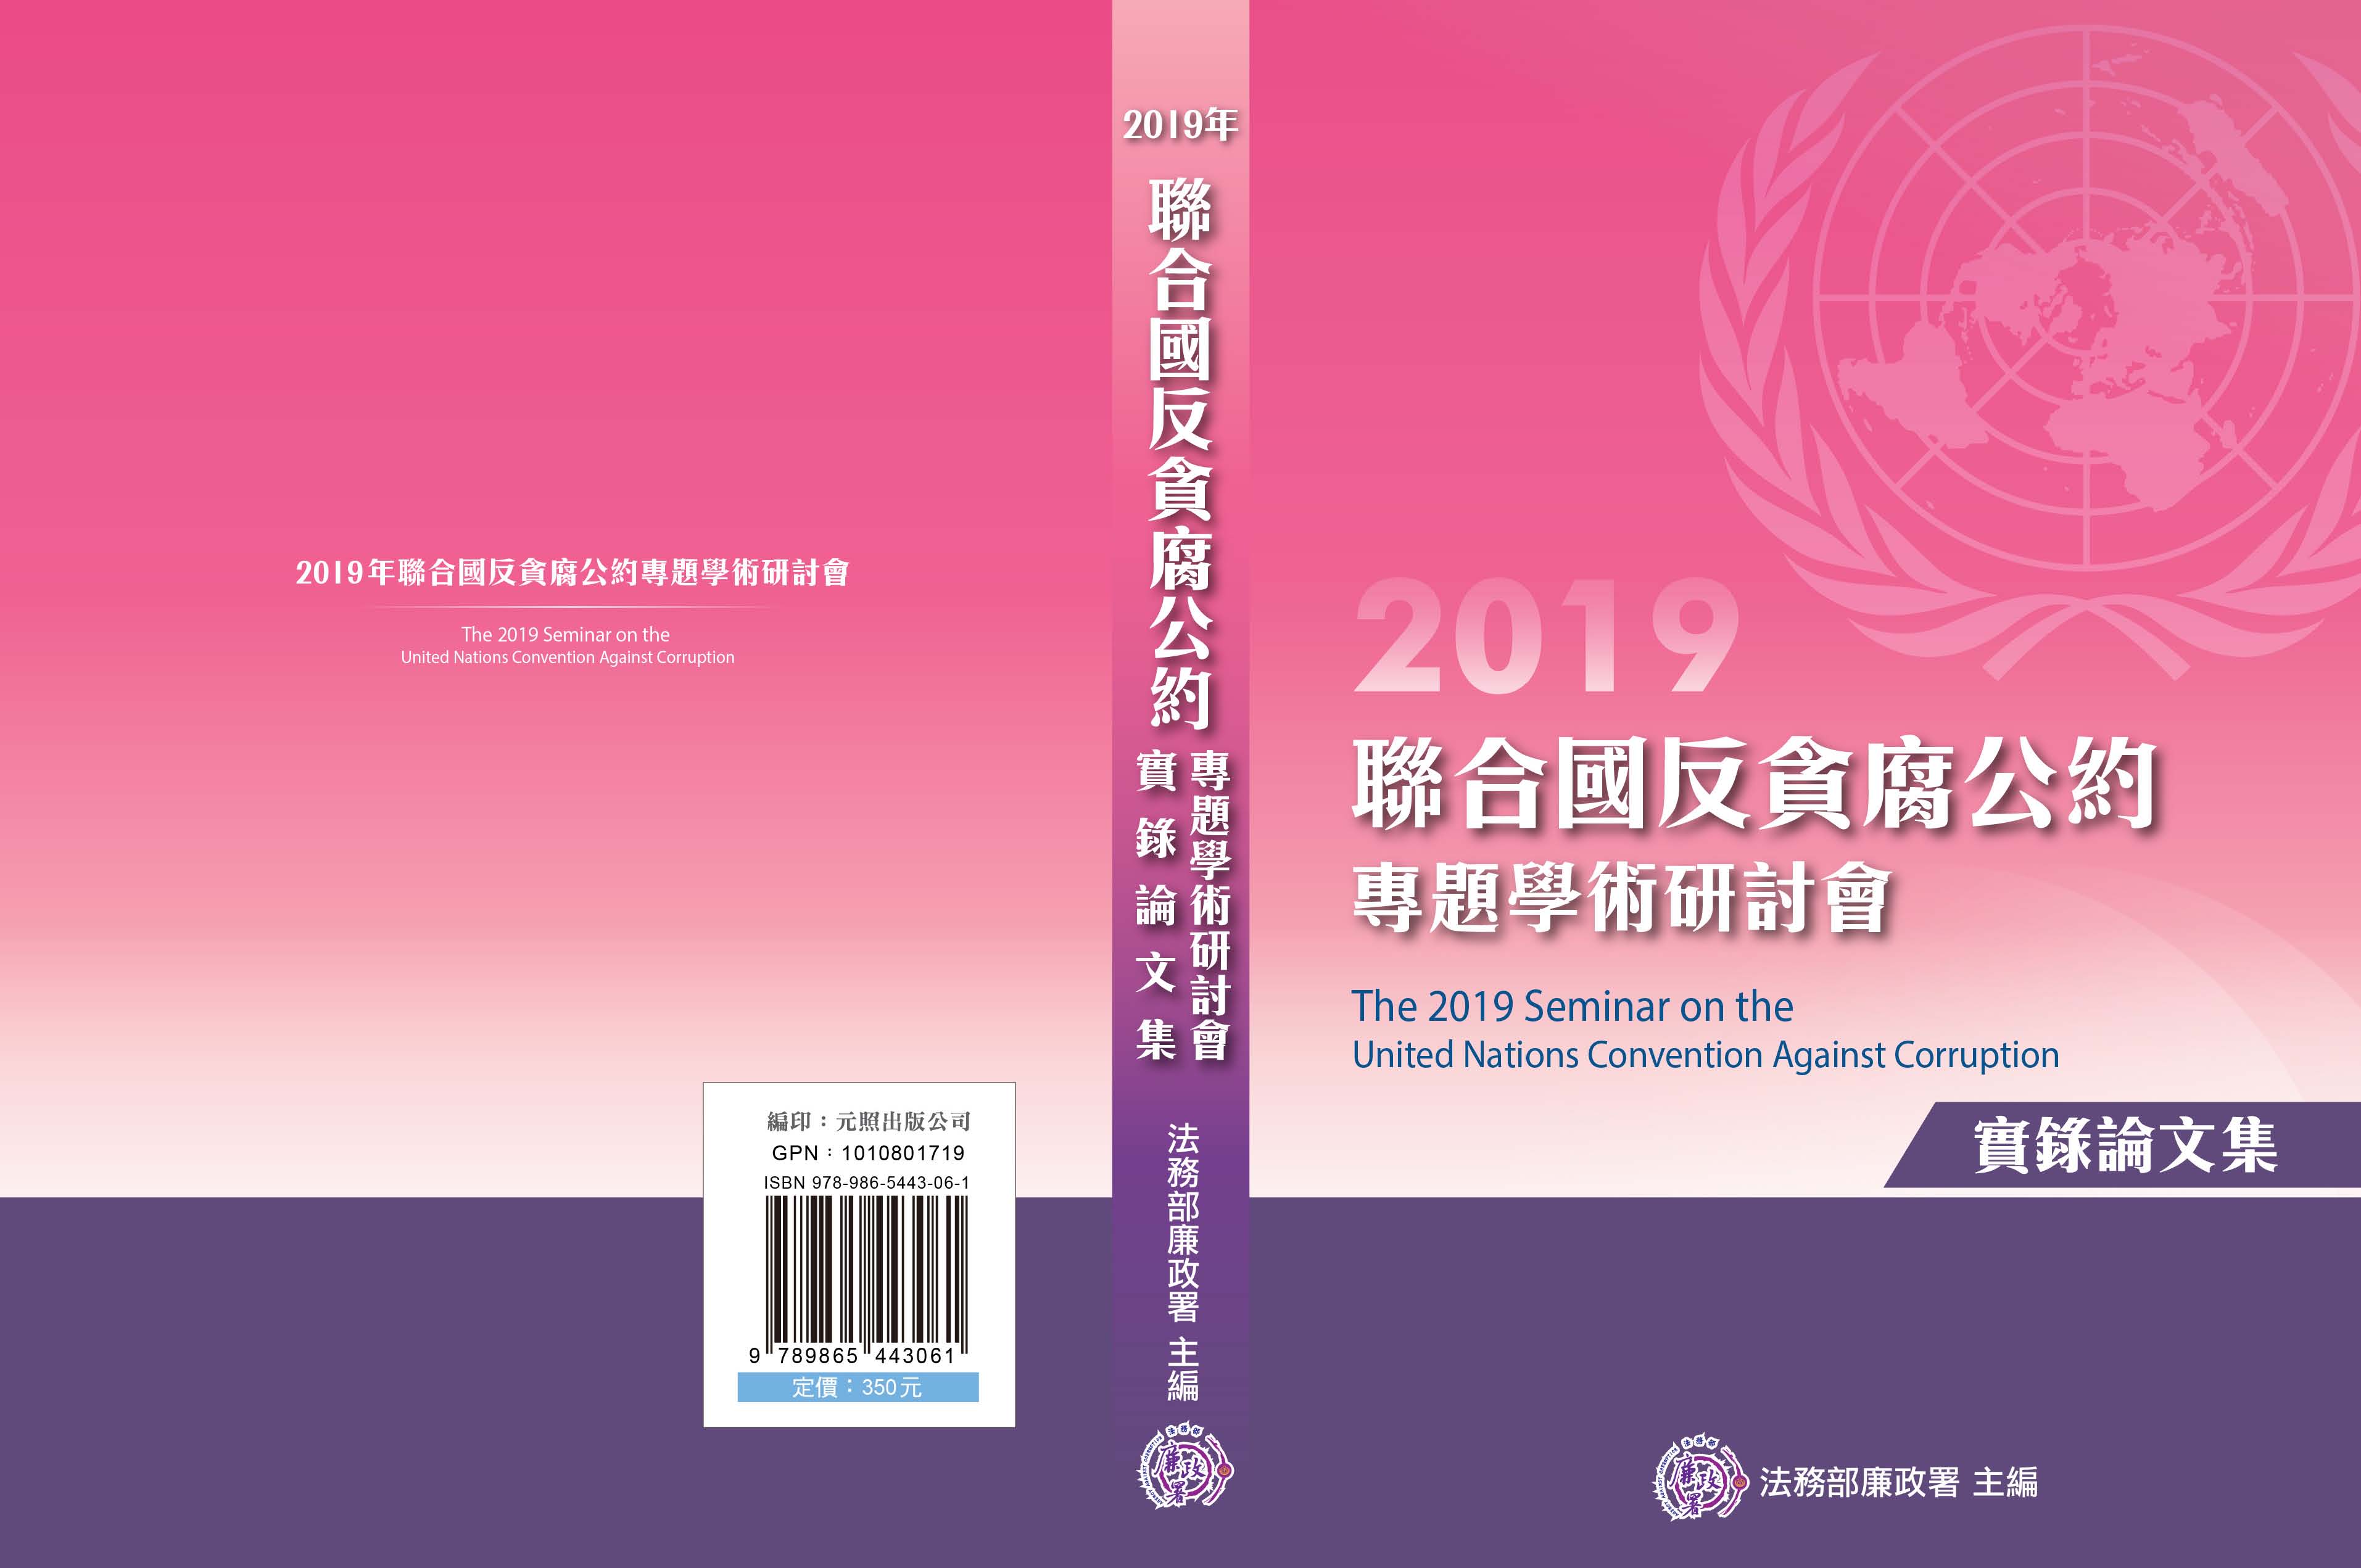 2019年聯合國反貪腐公約專題學術研討會實錄論文集